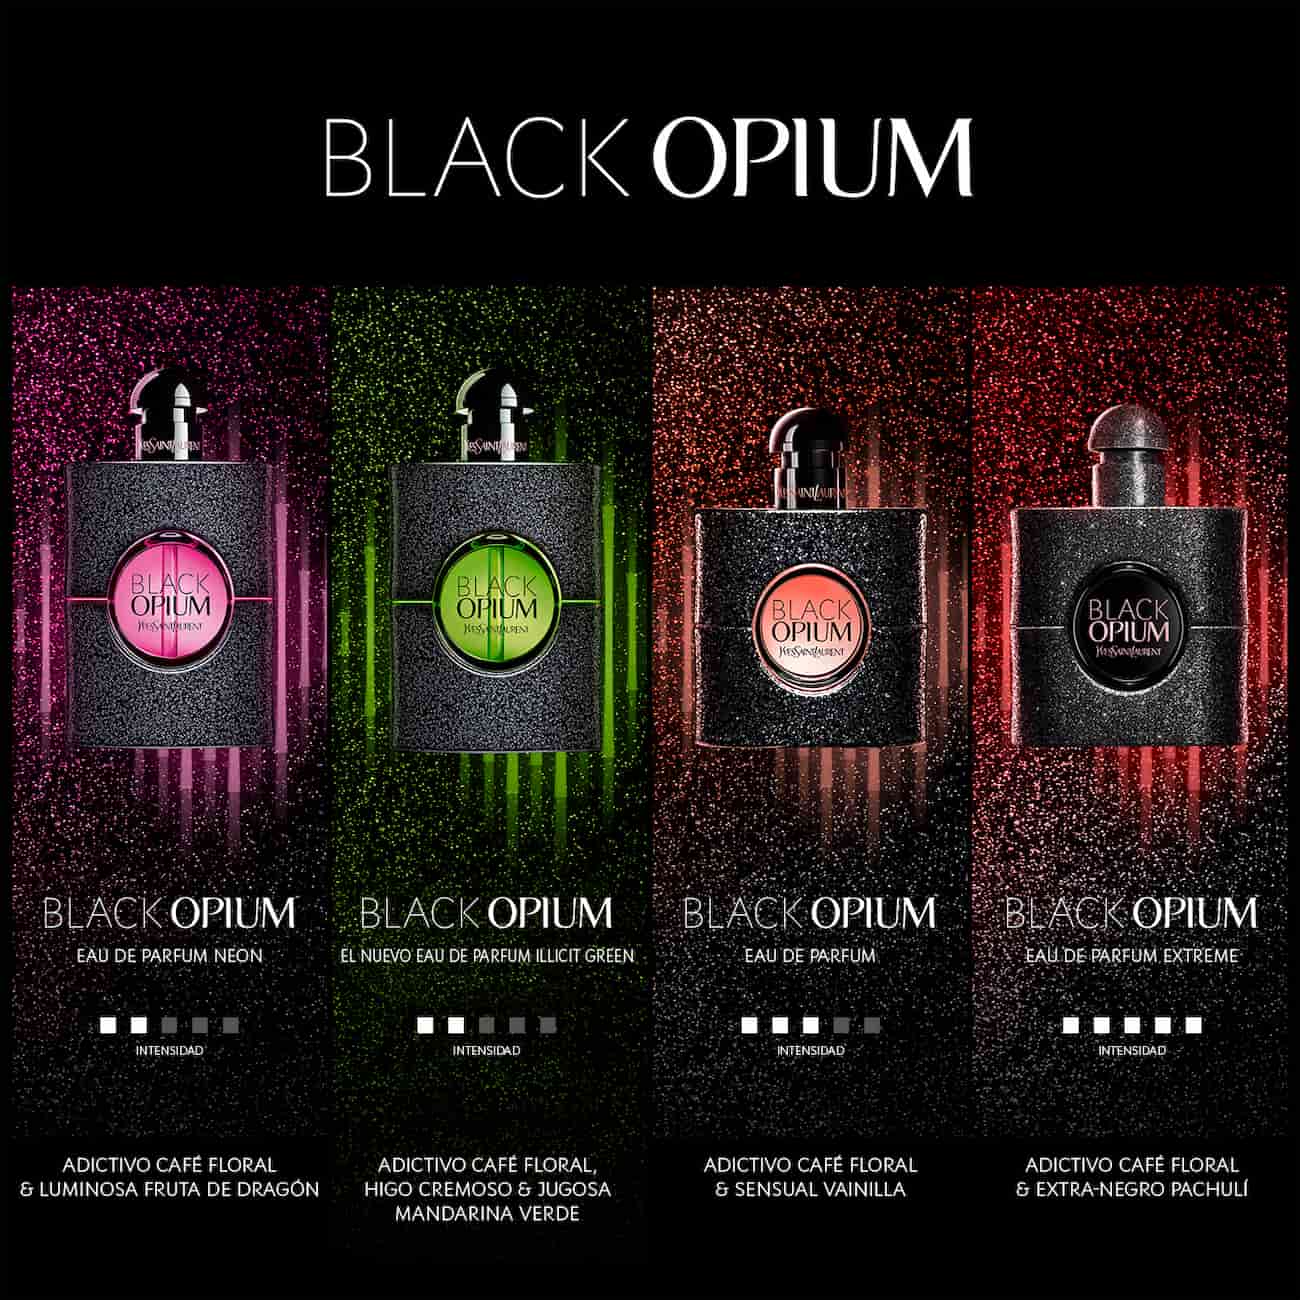 Black Opium nelle sue 4 versioni